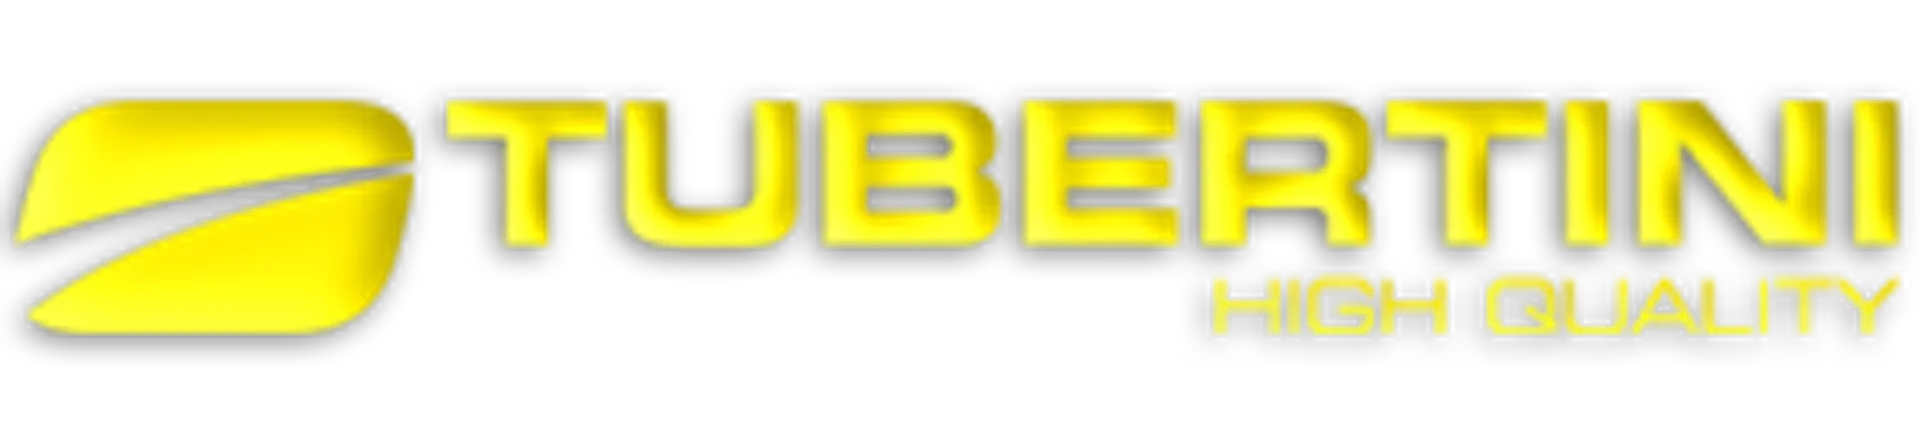 TUBERTINI logo